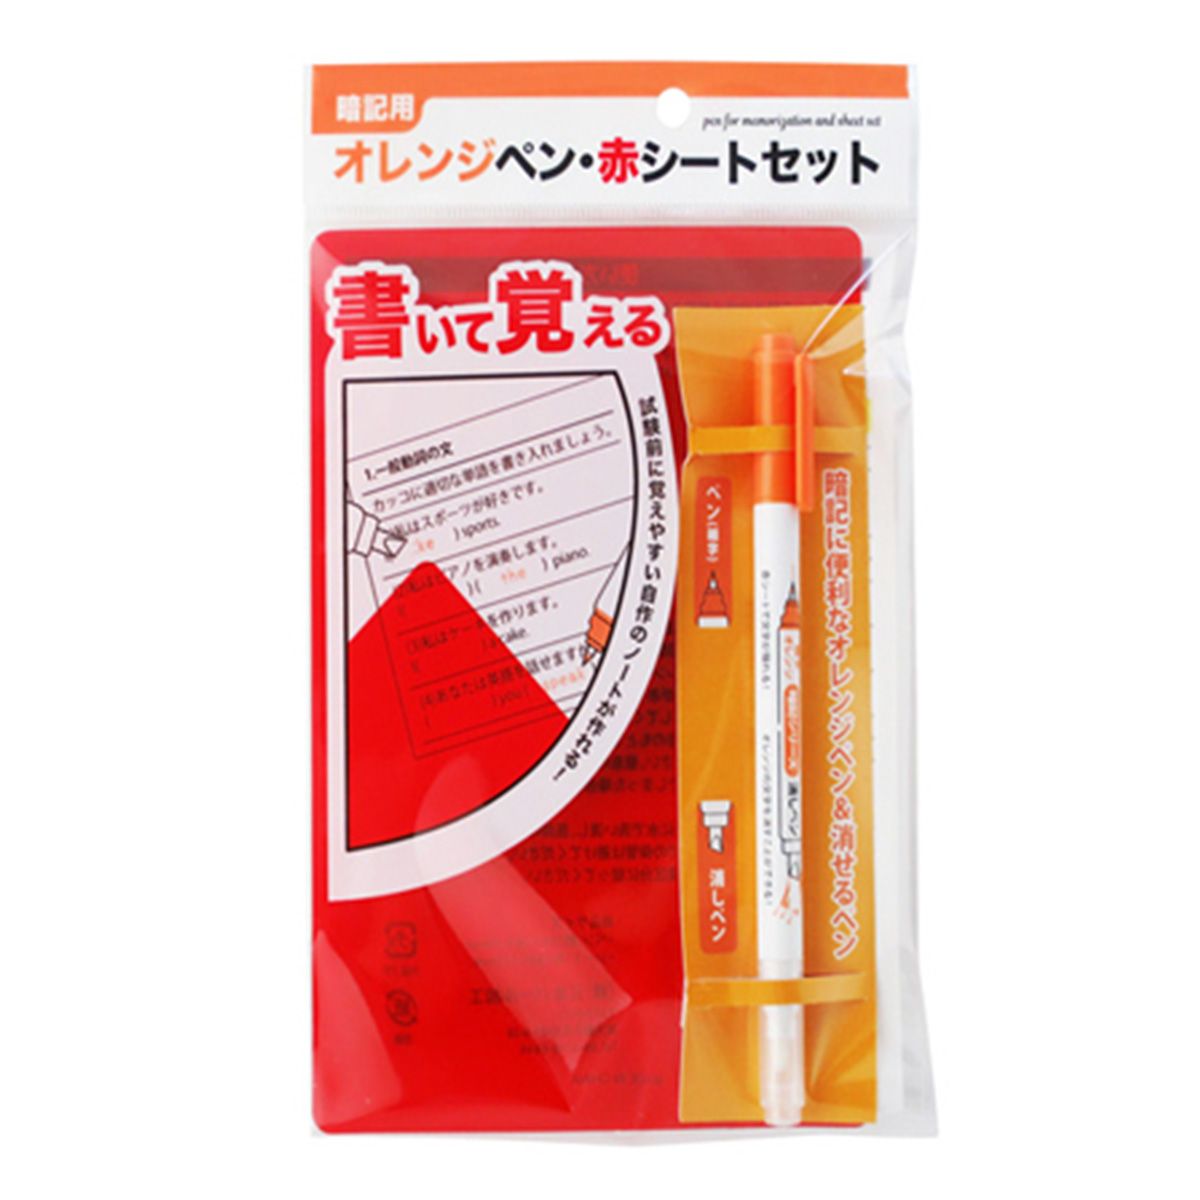 暗記シリーズ　オレンジペン・赤シートセット 1391/350913